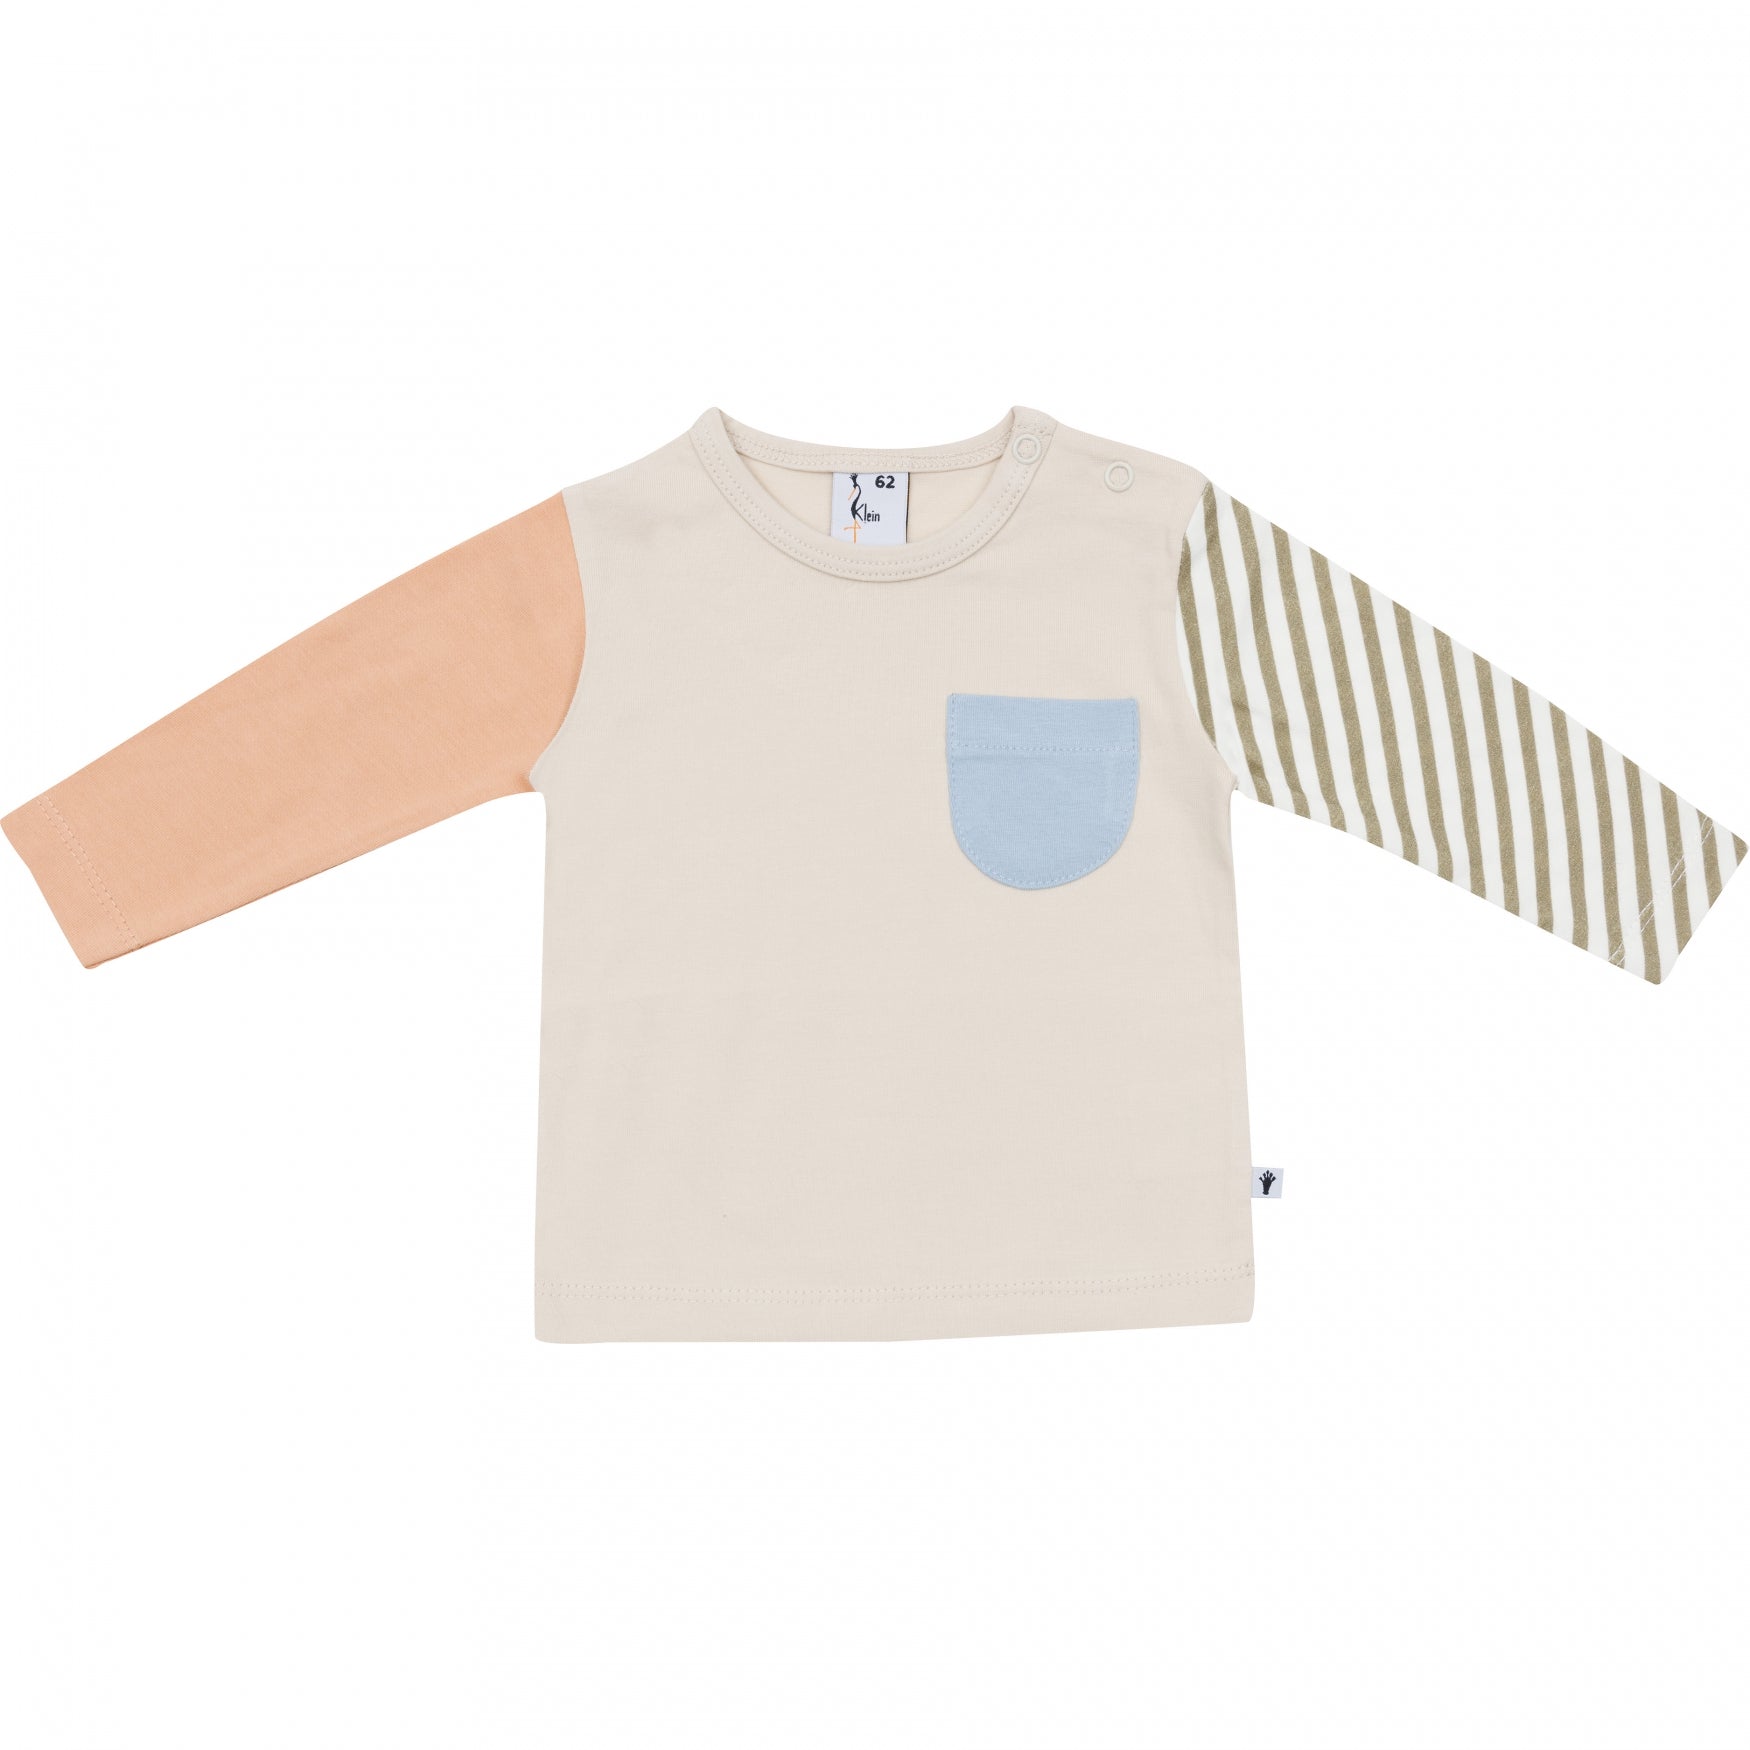 Jongens Shirt Colorblock van Klein Baby in de kleur Ancient Scroll in maat 86.